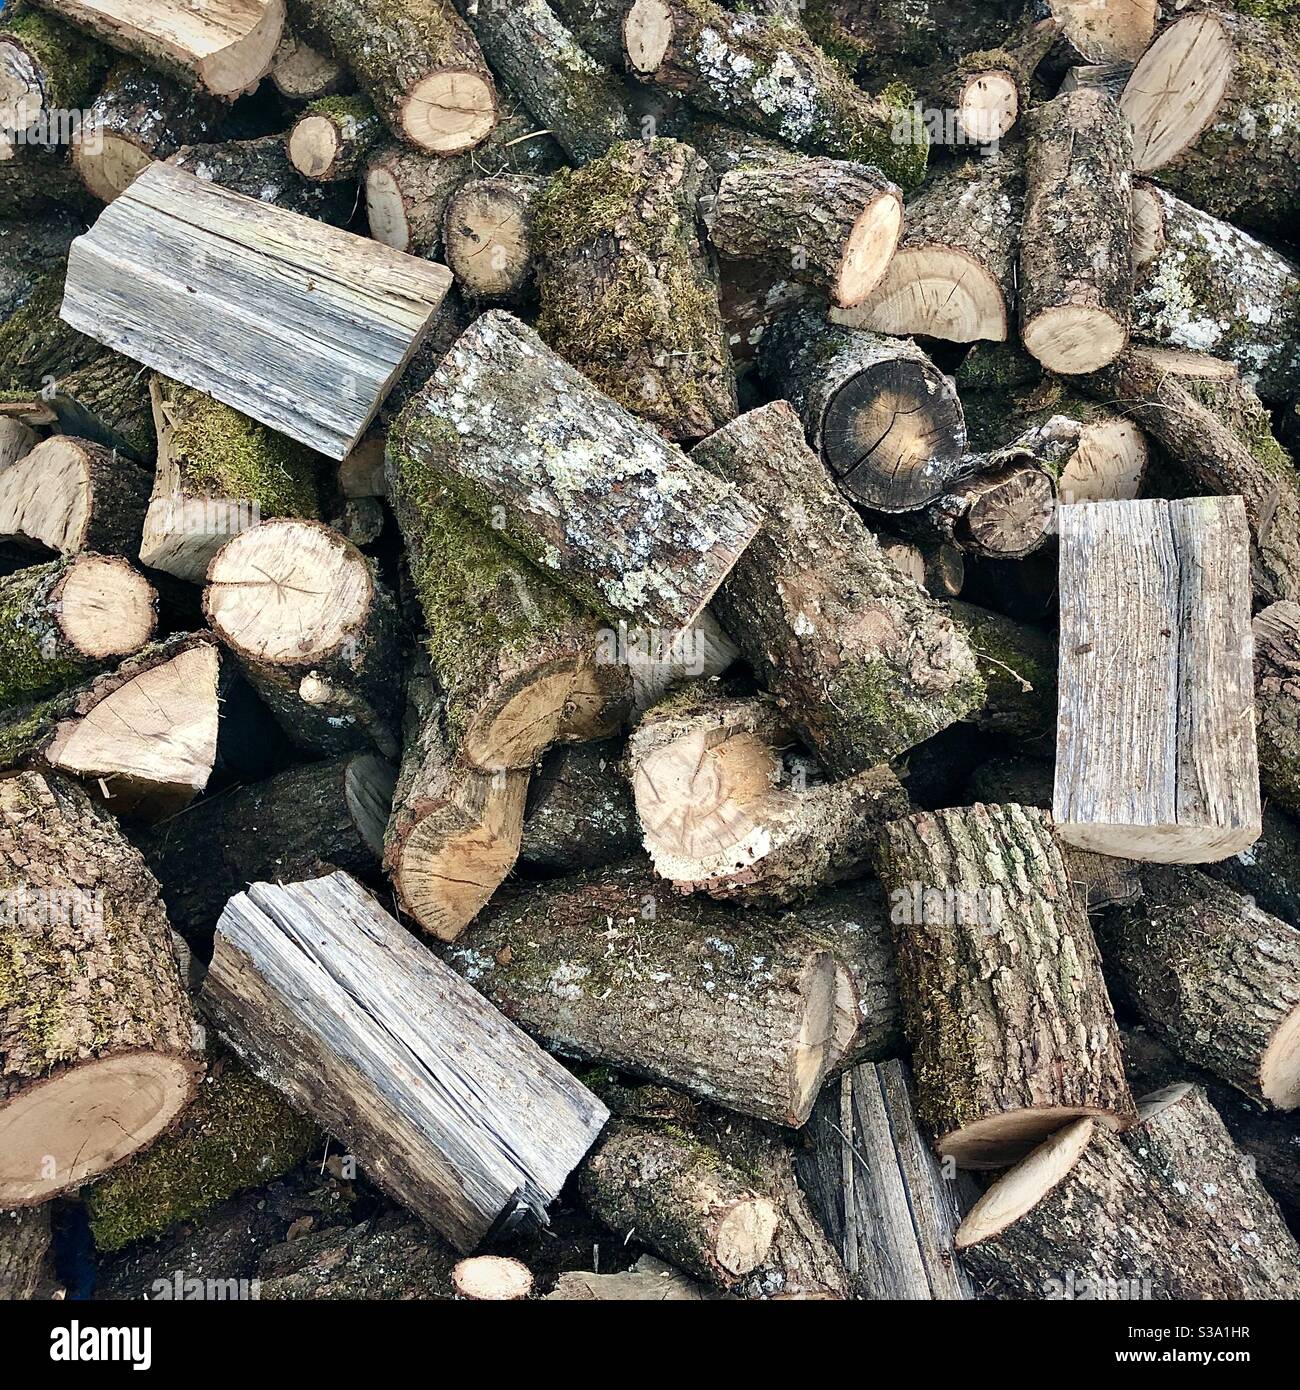 Pila de troncos de roble para leña. Foto de stock